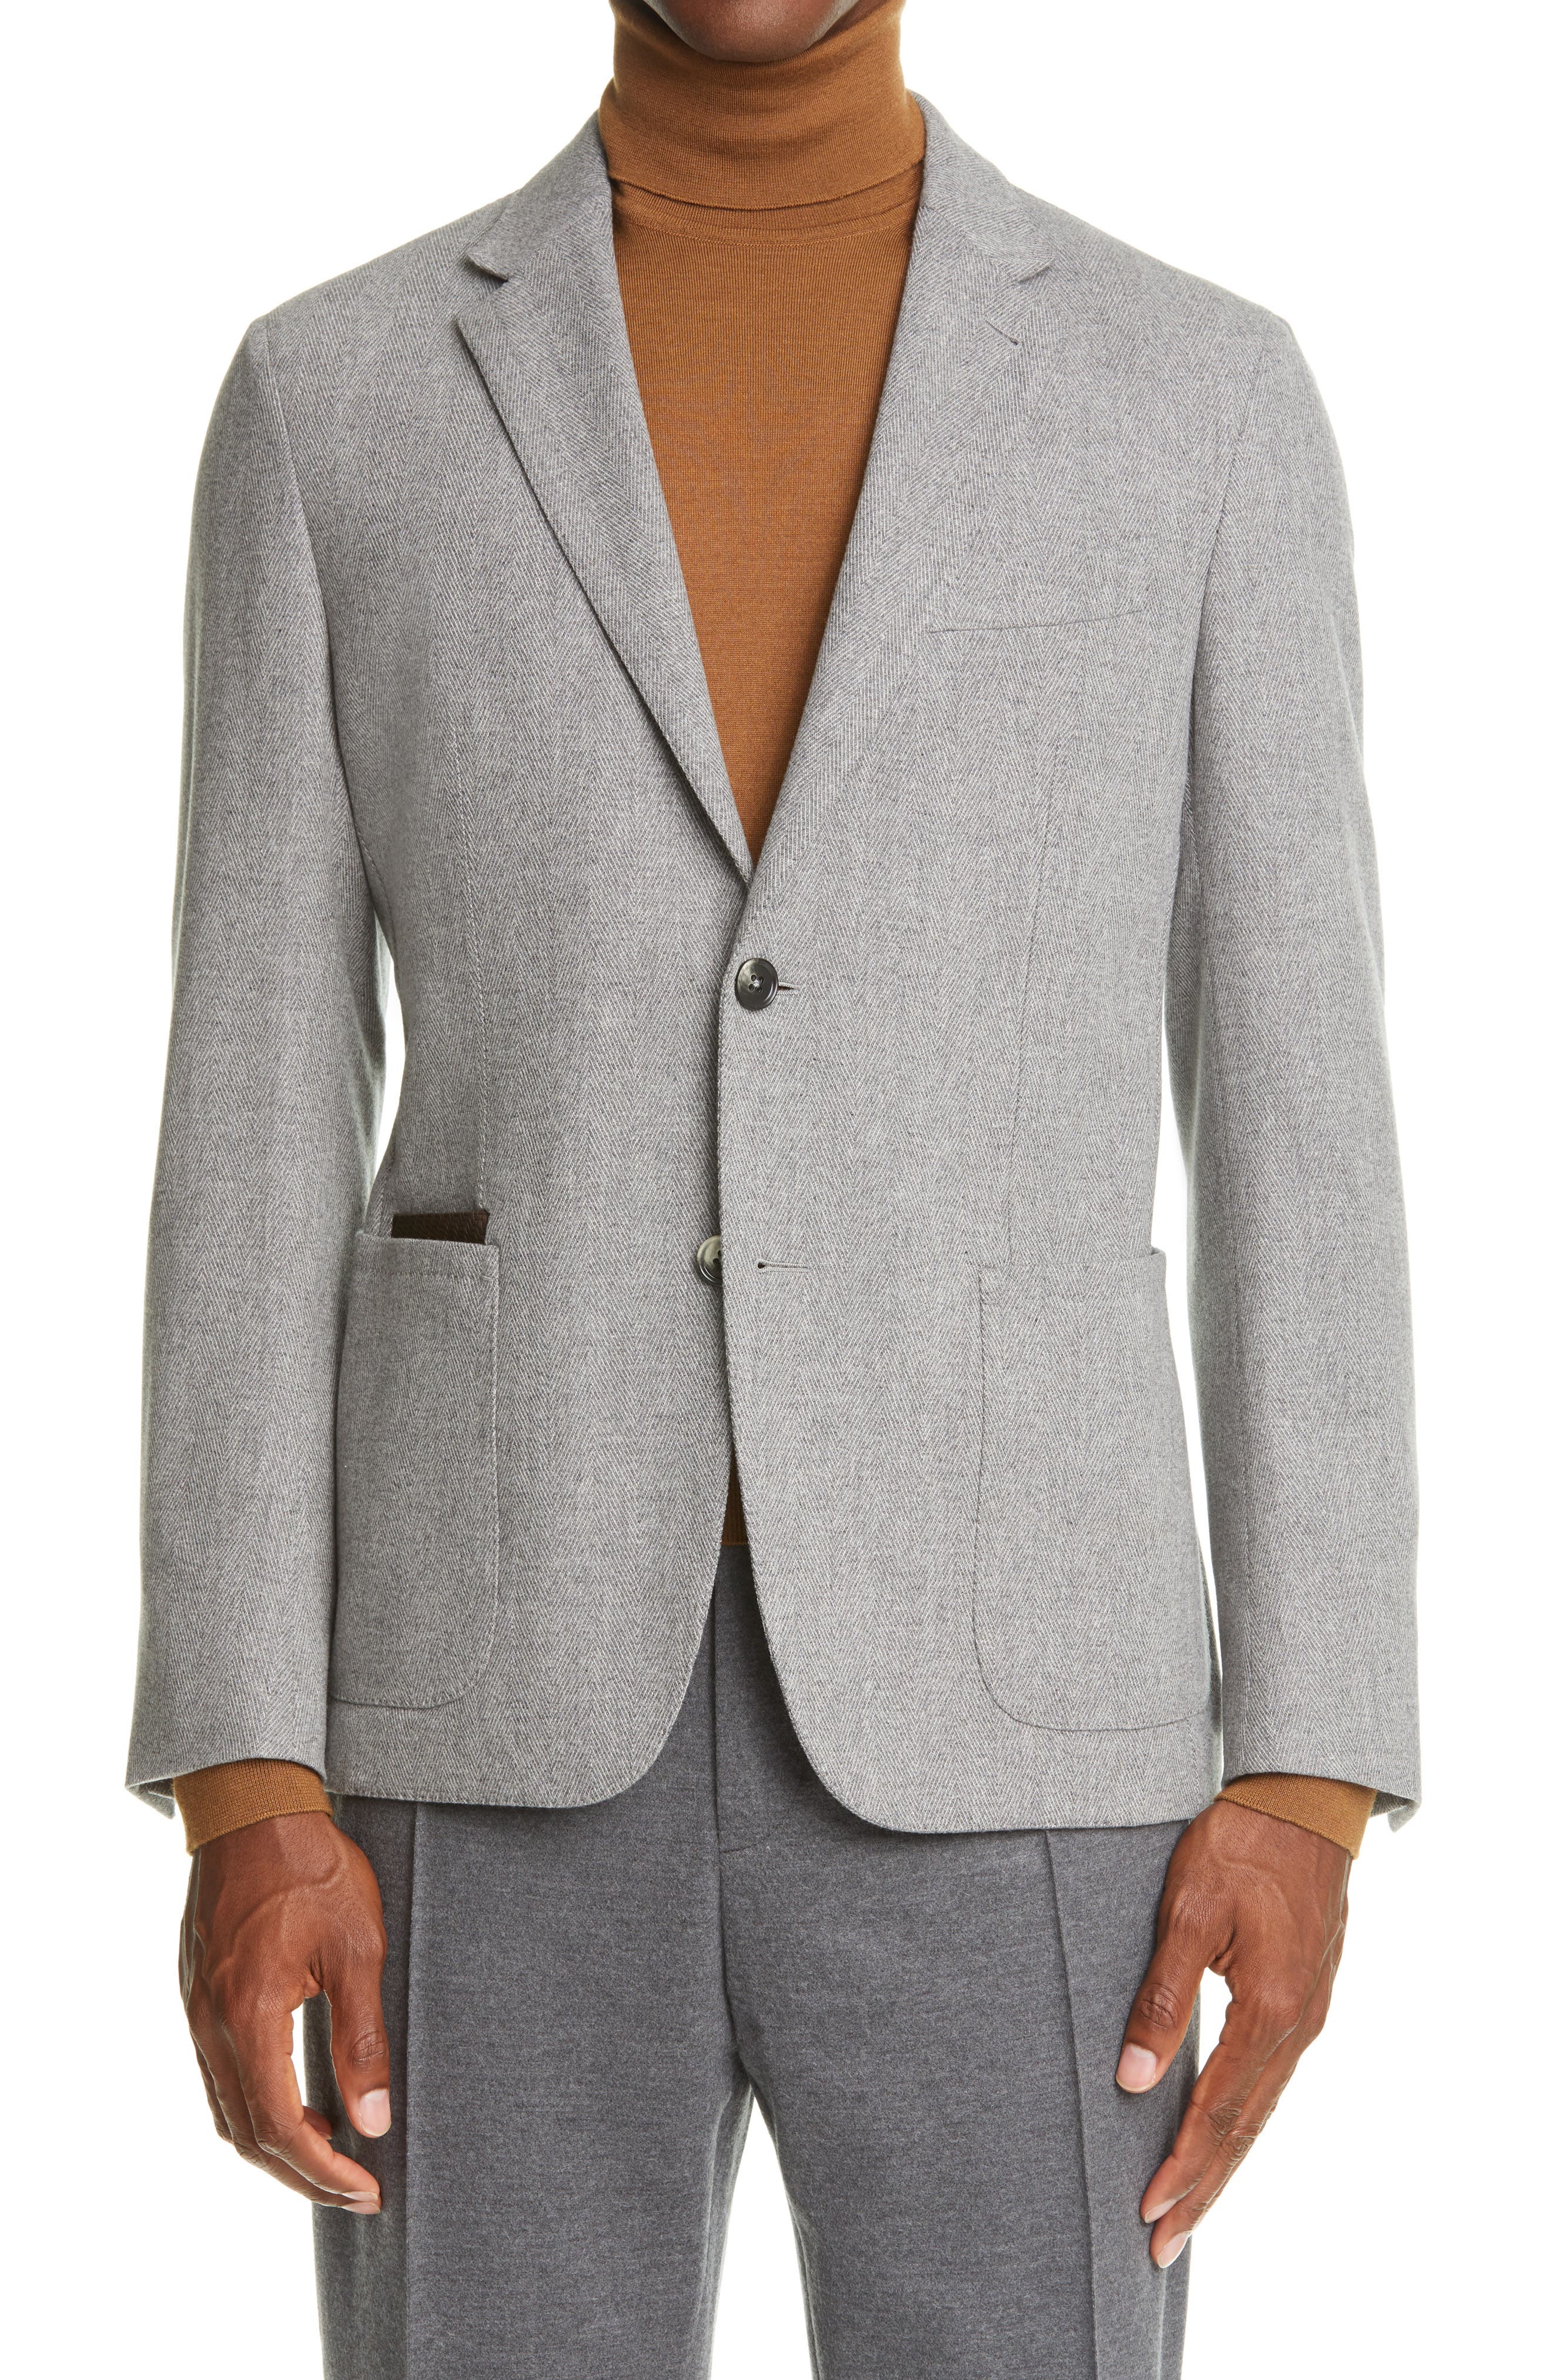 Ermenegildo Zegna Informale Herringbone Wool & Cashmere Sport Coat In Light Grey